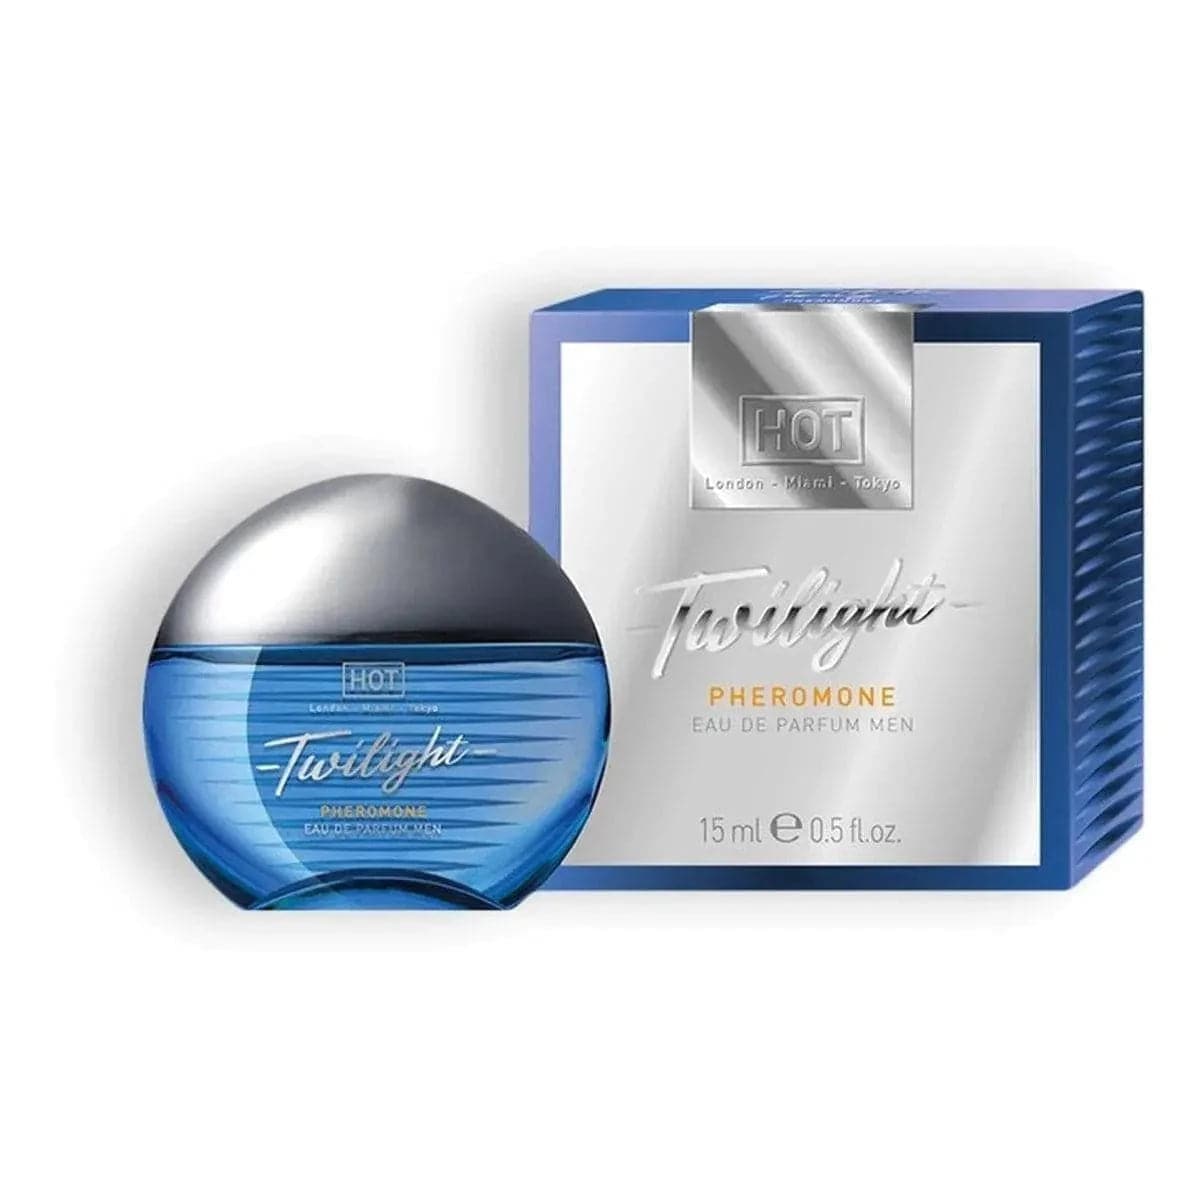 Perfume Homem com Feromonas Twilight 15ml - Fragrância clássica e irresistível